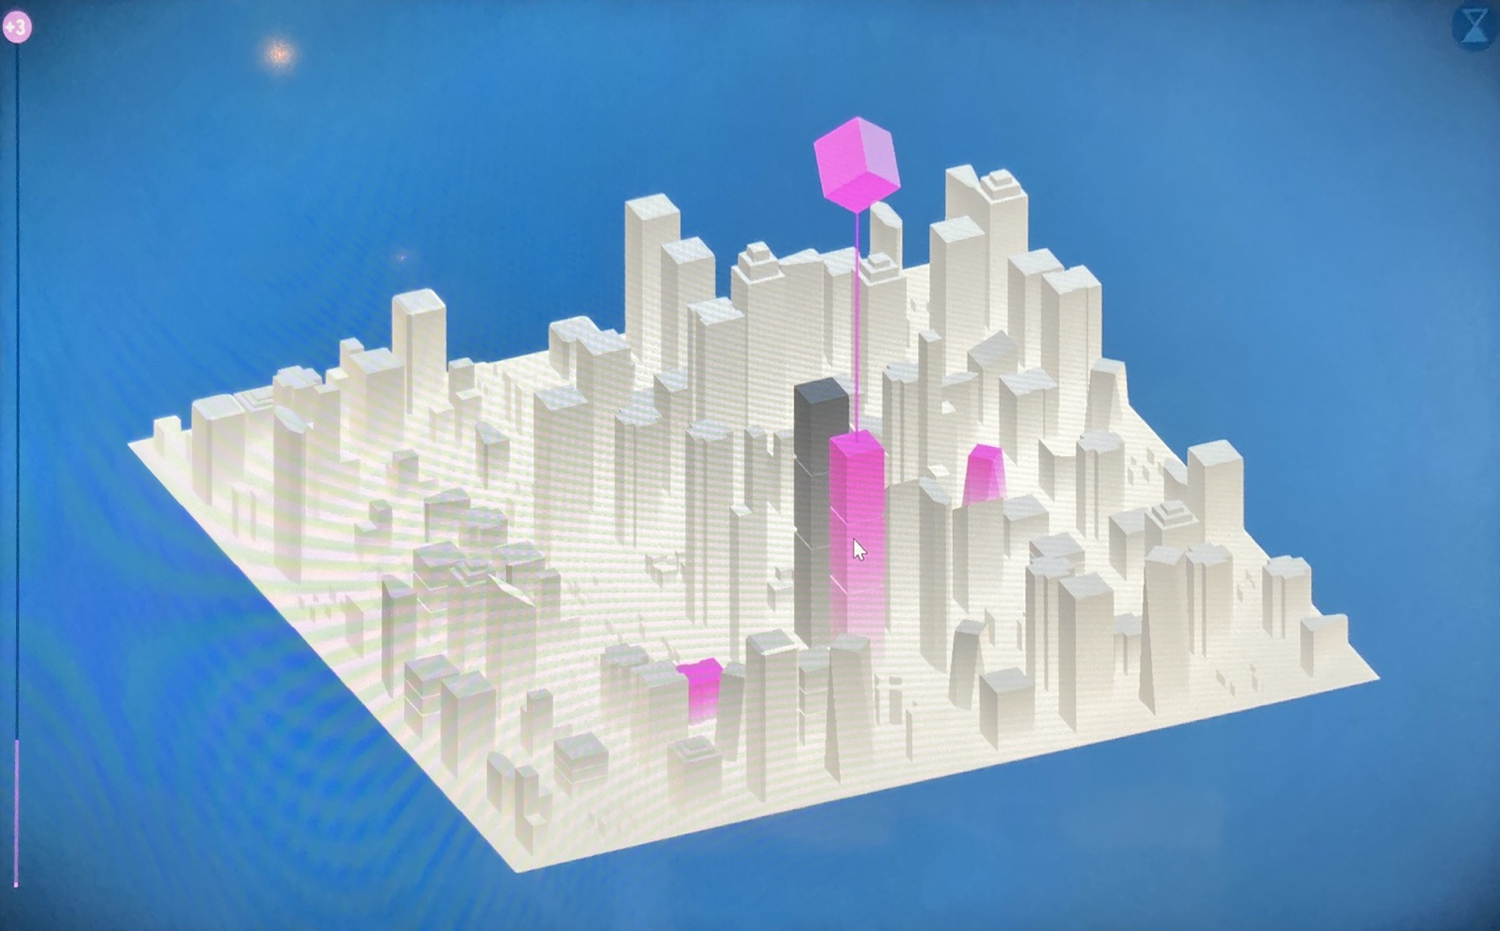 Screenshot aus dem Spiel Nova Alea, auf einer quadratischen 3D-Fläche wachsen Häuser unterschiedlicher Formen und Größen heraus, über einem schwebt ein rosa Würfel, dies ist sozusagen der Mauszeiger, mit dem die Spieler:innen den Spielverlauf beeinflussen